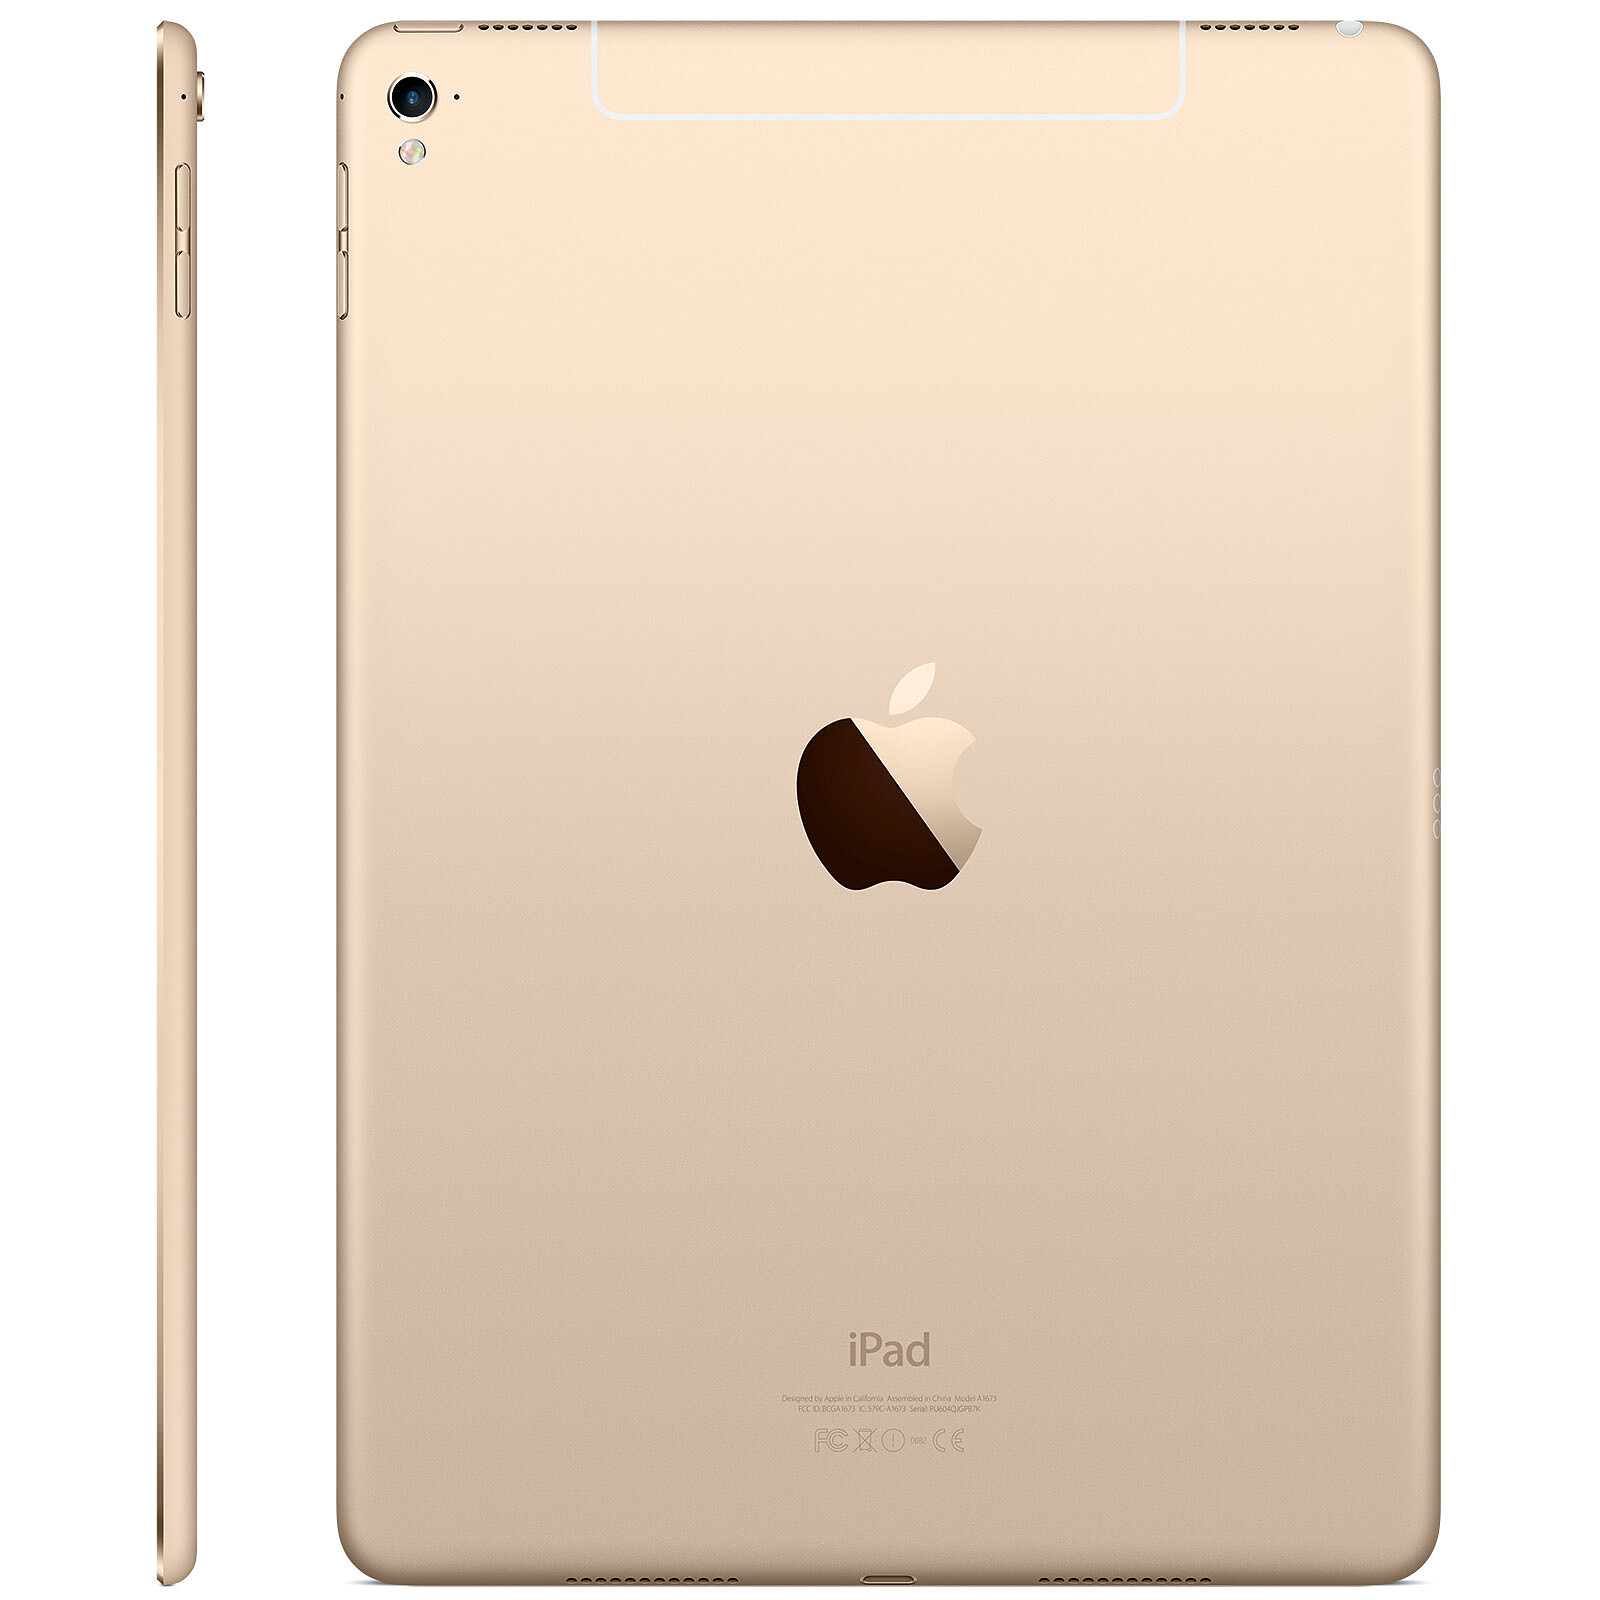 APPLE iPad Pro Ecran 9,7 iOS 9 Mémoire 32Go WiFi Tablette 